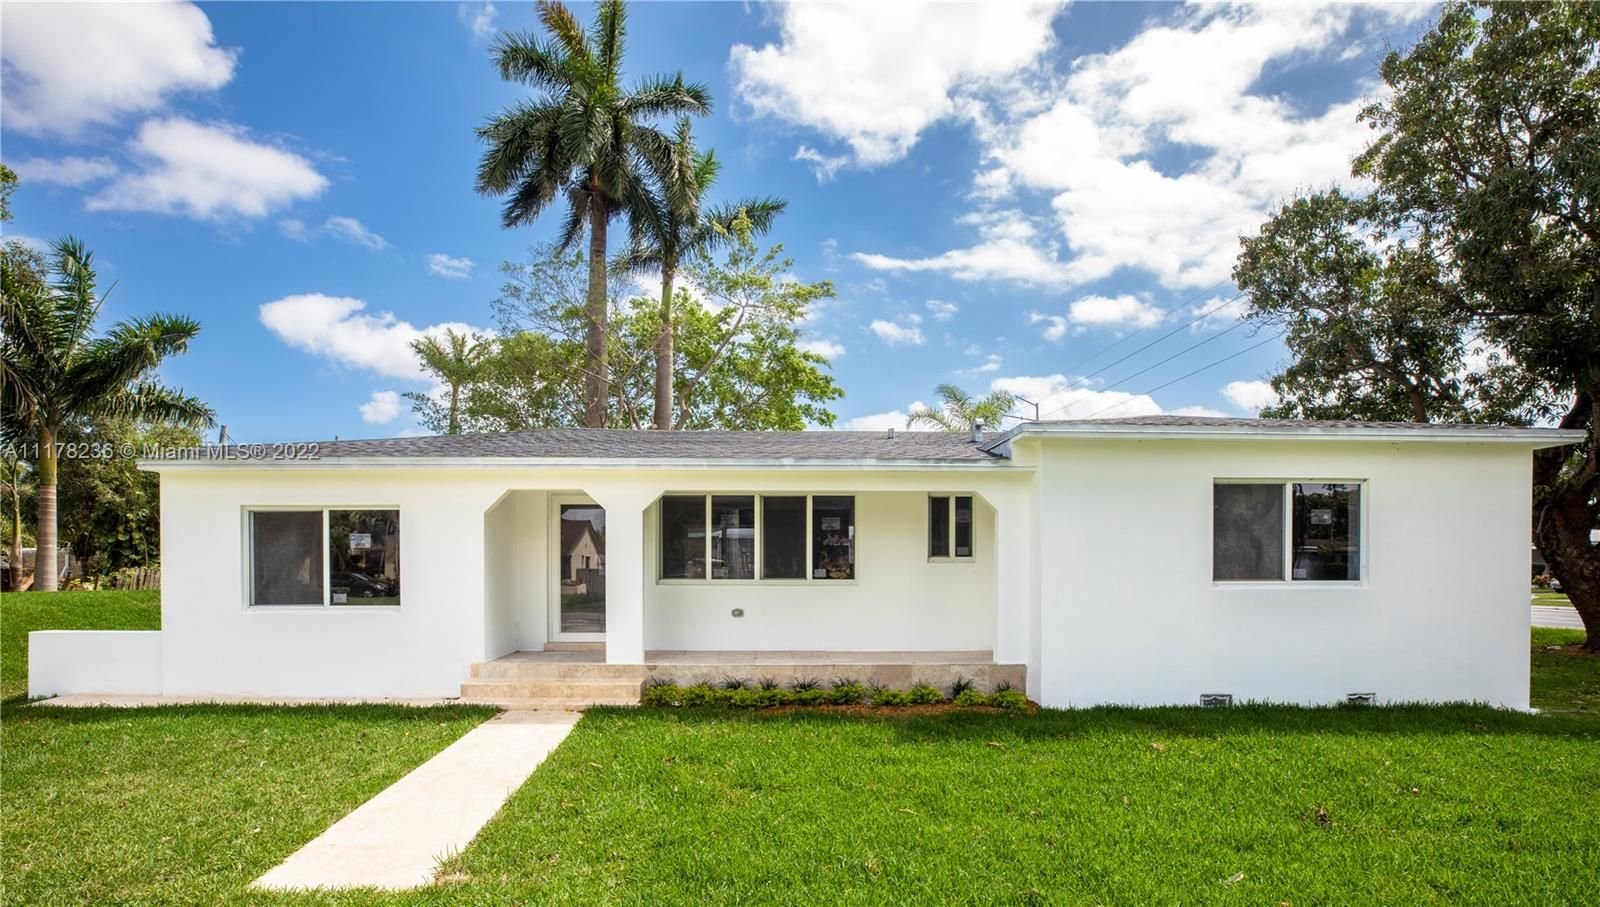 Real estate property located at 13501 Miami Ct, Miami-Dade County, Miami, FL